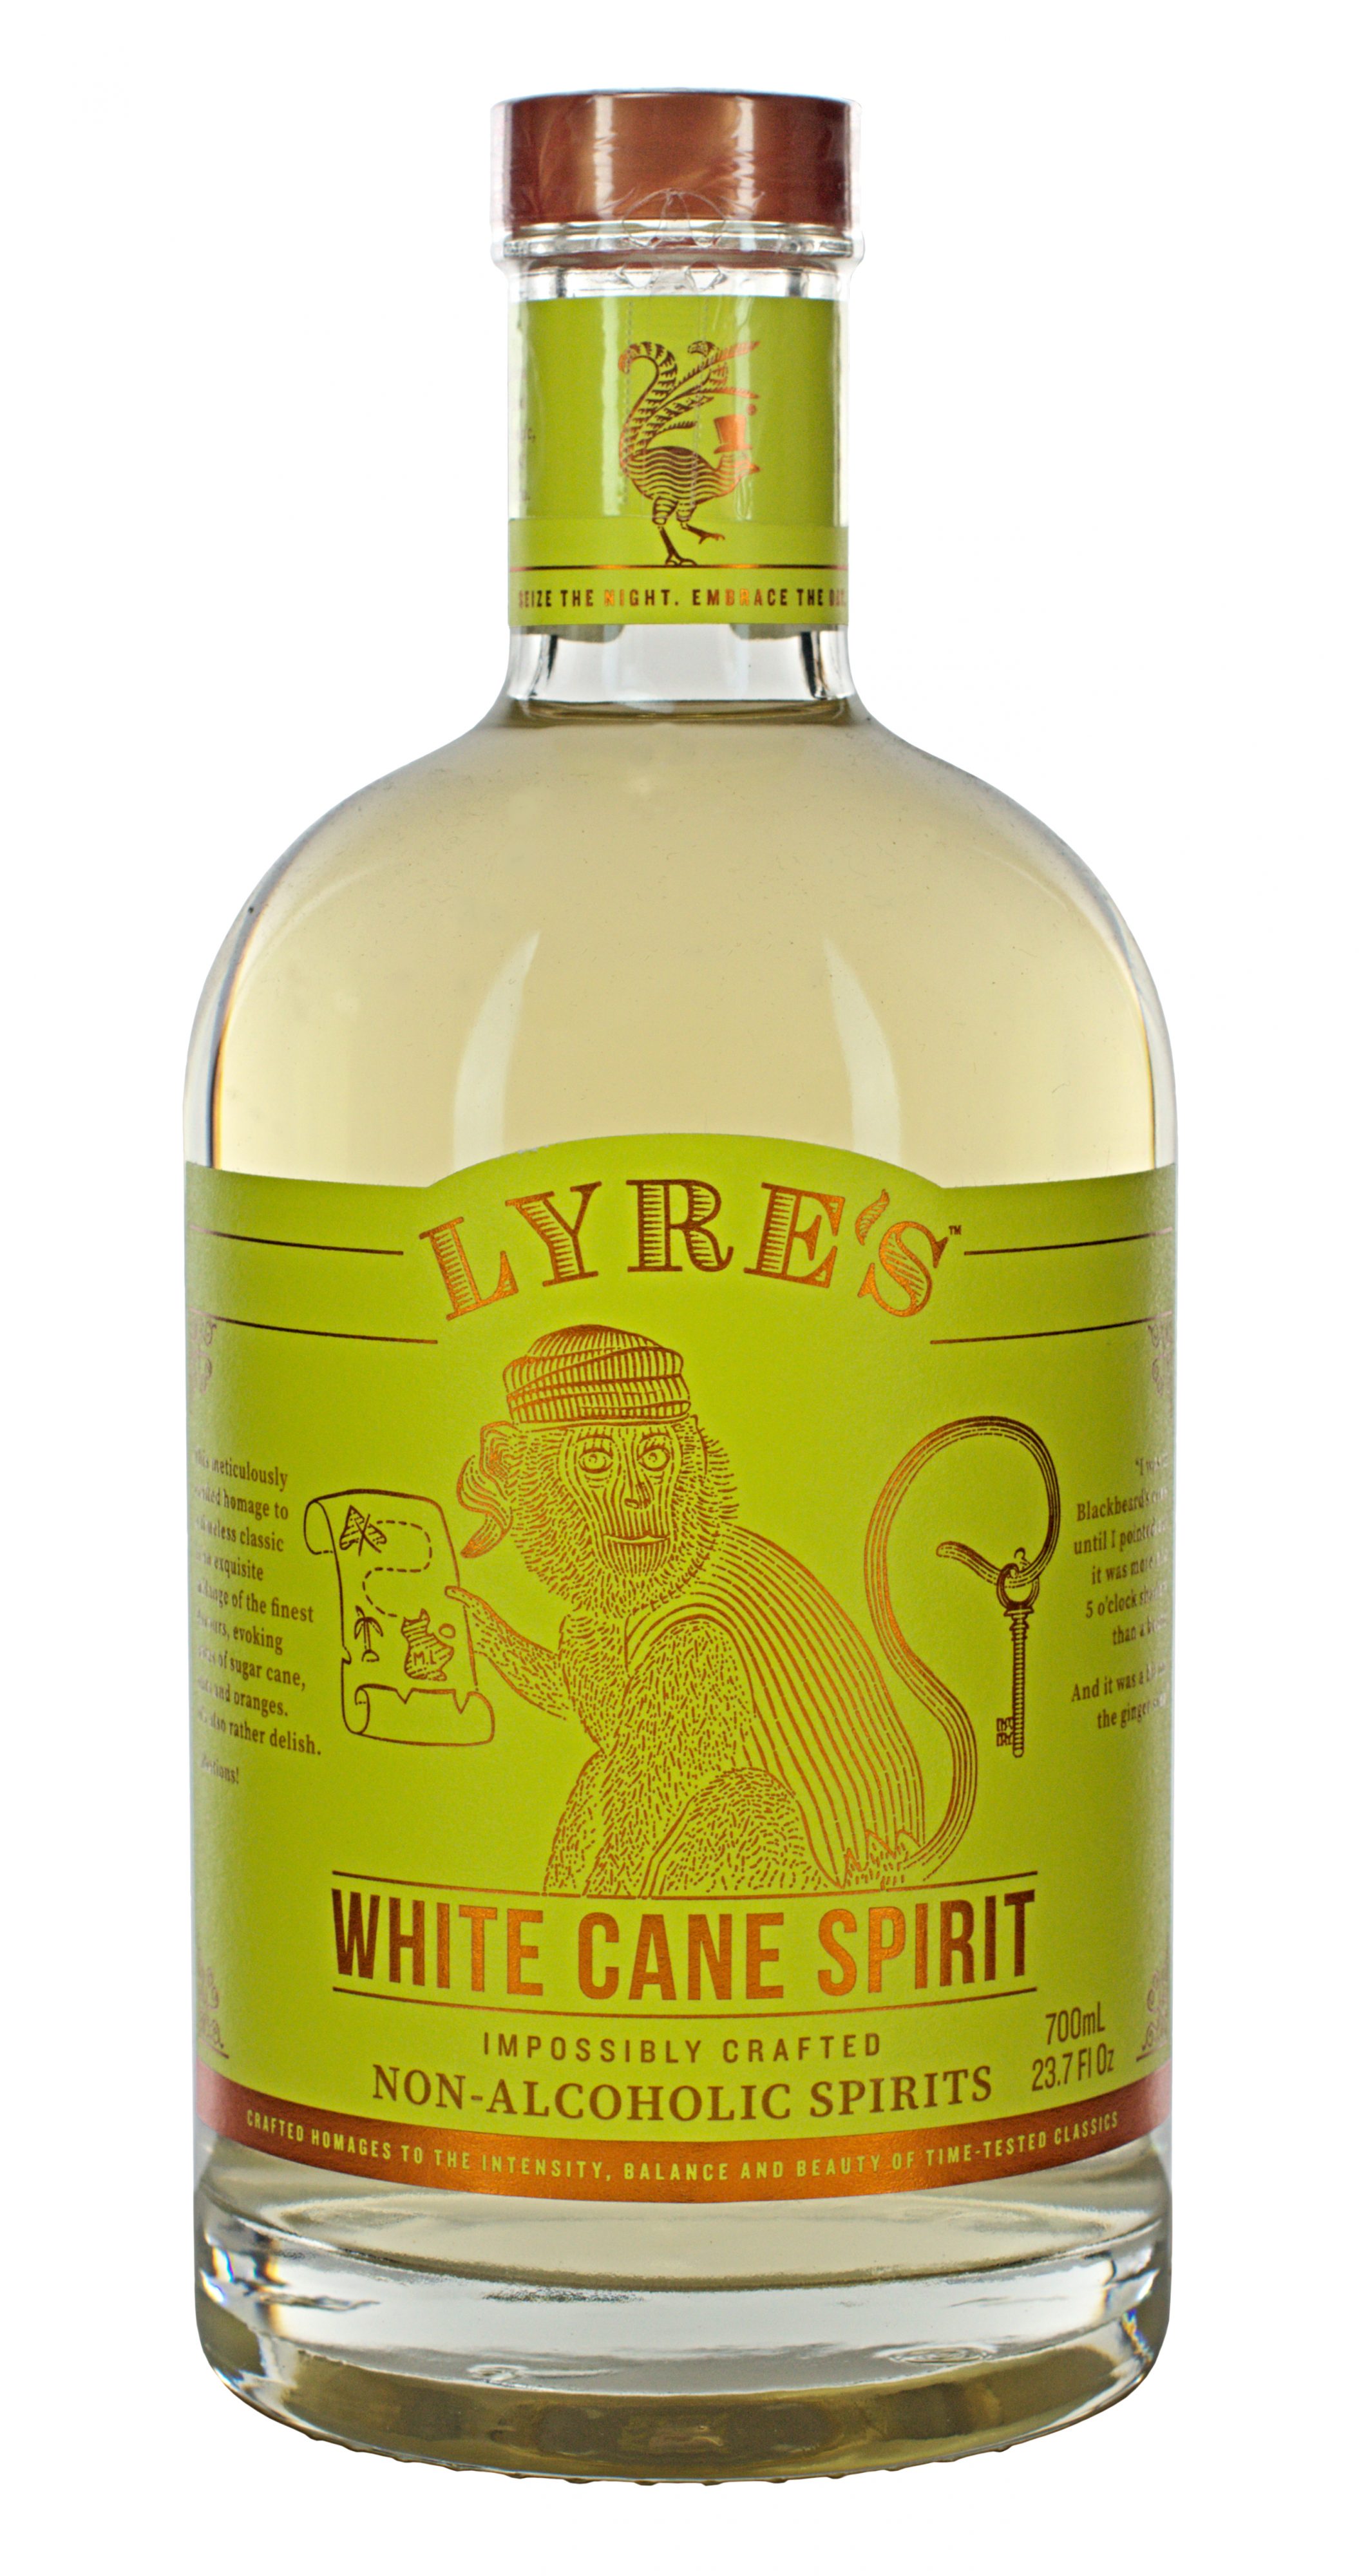 Lyre’s Non-Alcoholic White Cane Spirit